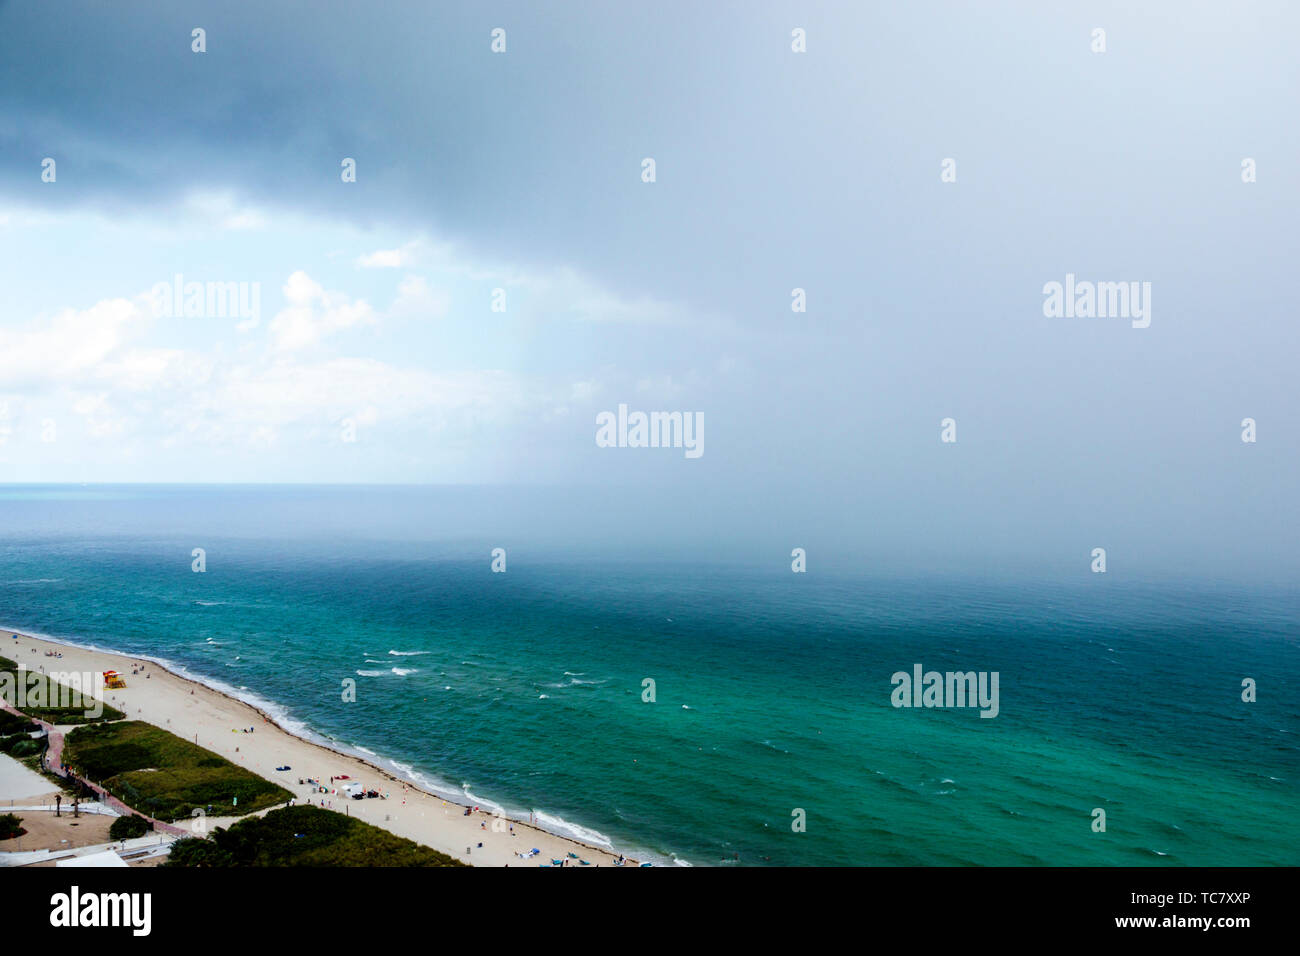 Miami Beach, Florida, North Beach, Atlantischer Ozean, Regen Regensturm Regensturm Regenguss, Wetter Wolken Wasser, FL190430067 Stockfoto